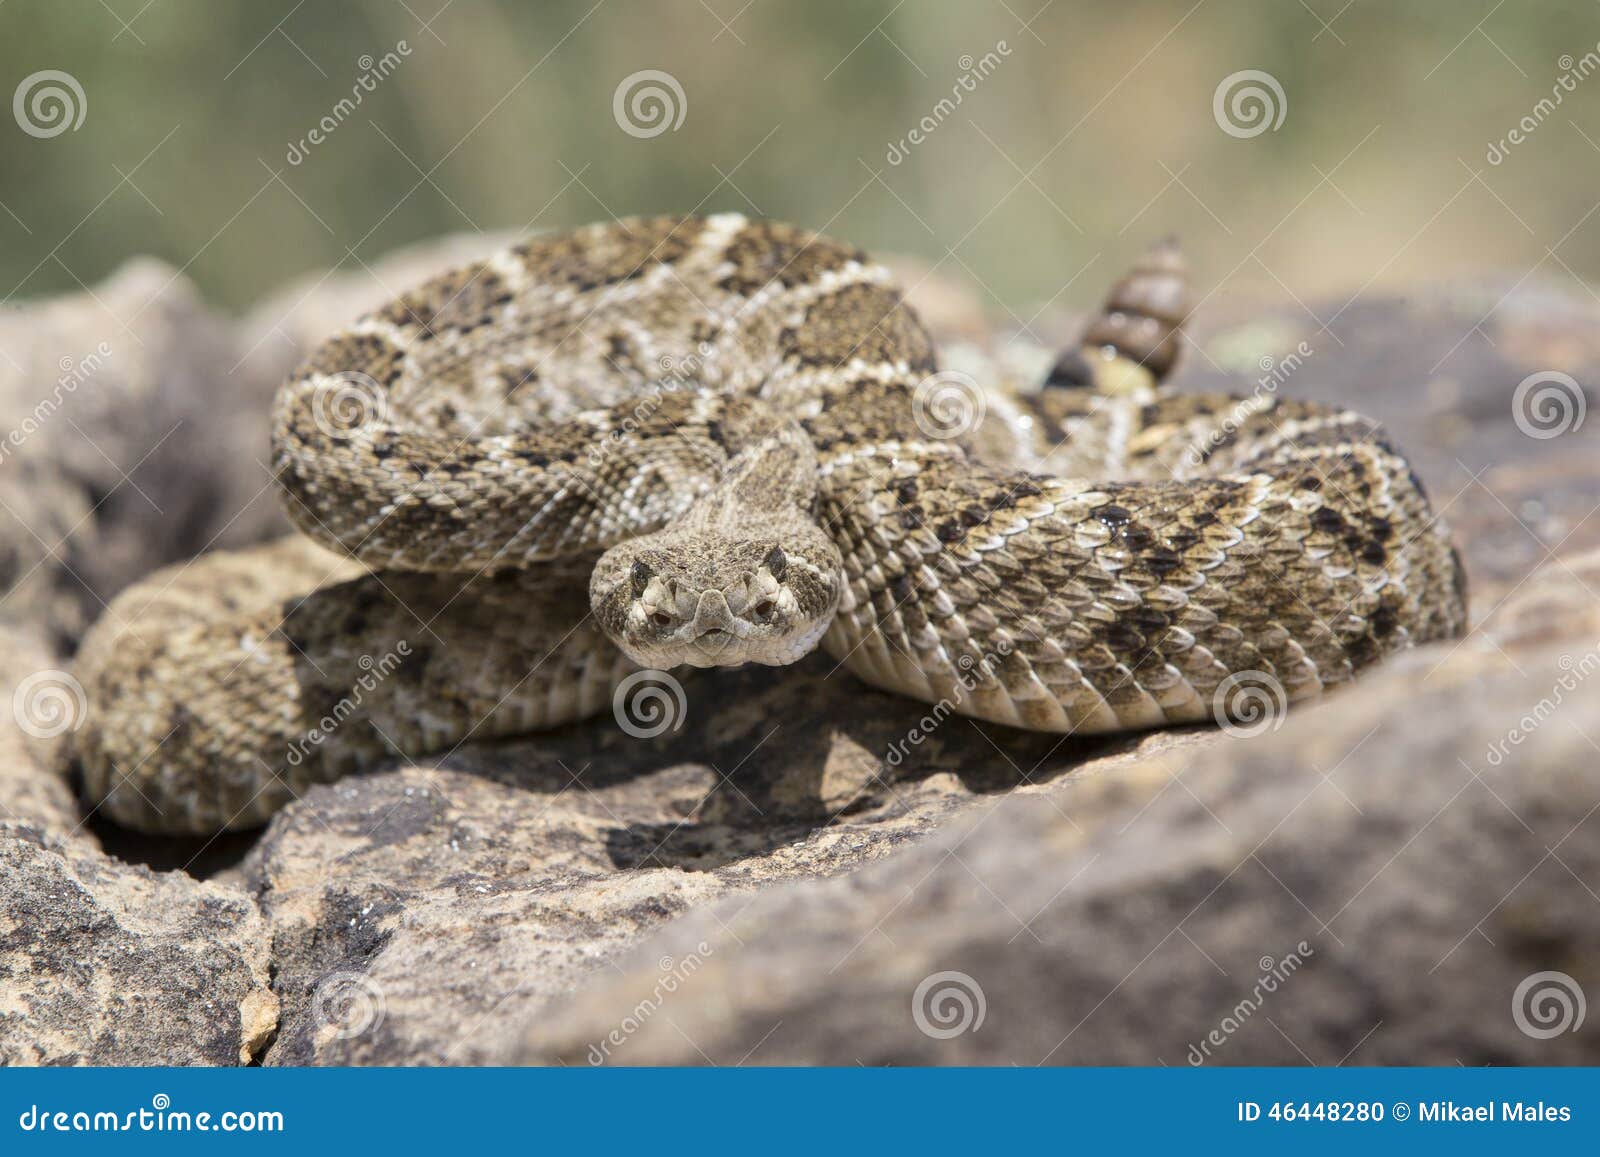 rattlesnake strike pose